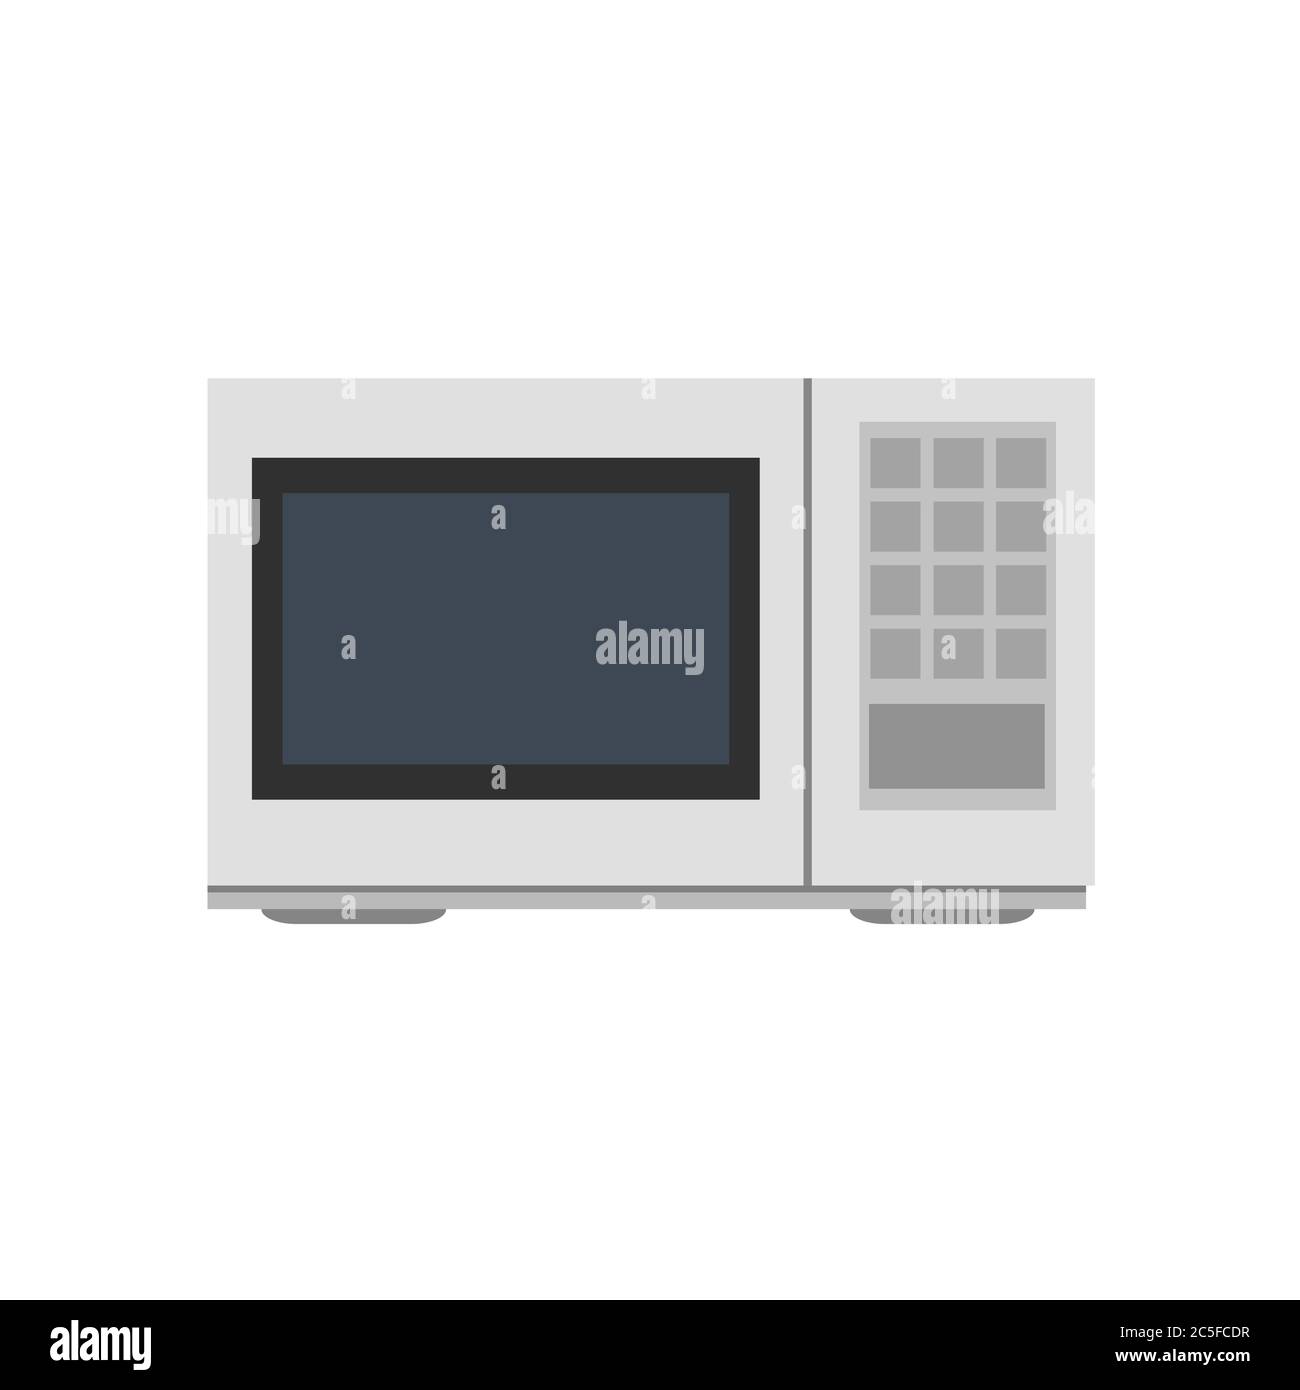 Mikrowellenherd Küche auf weißem Hintergrund. Symbol für isolierte elektrische Elemente für Küchengeräte. Vektorgrafik EPS 10. Stock Vektor